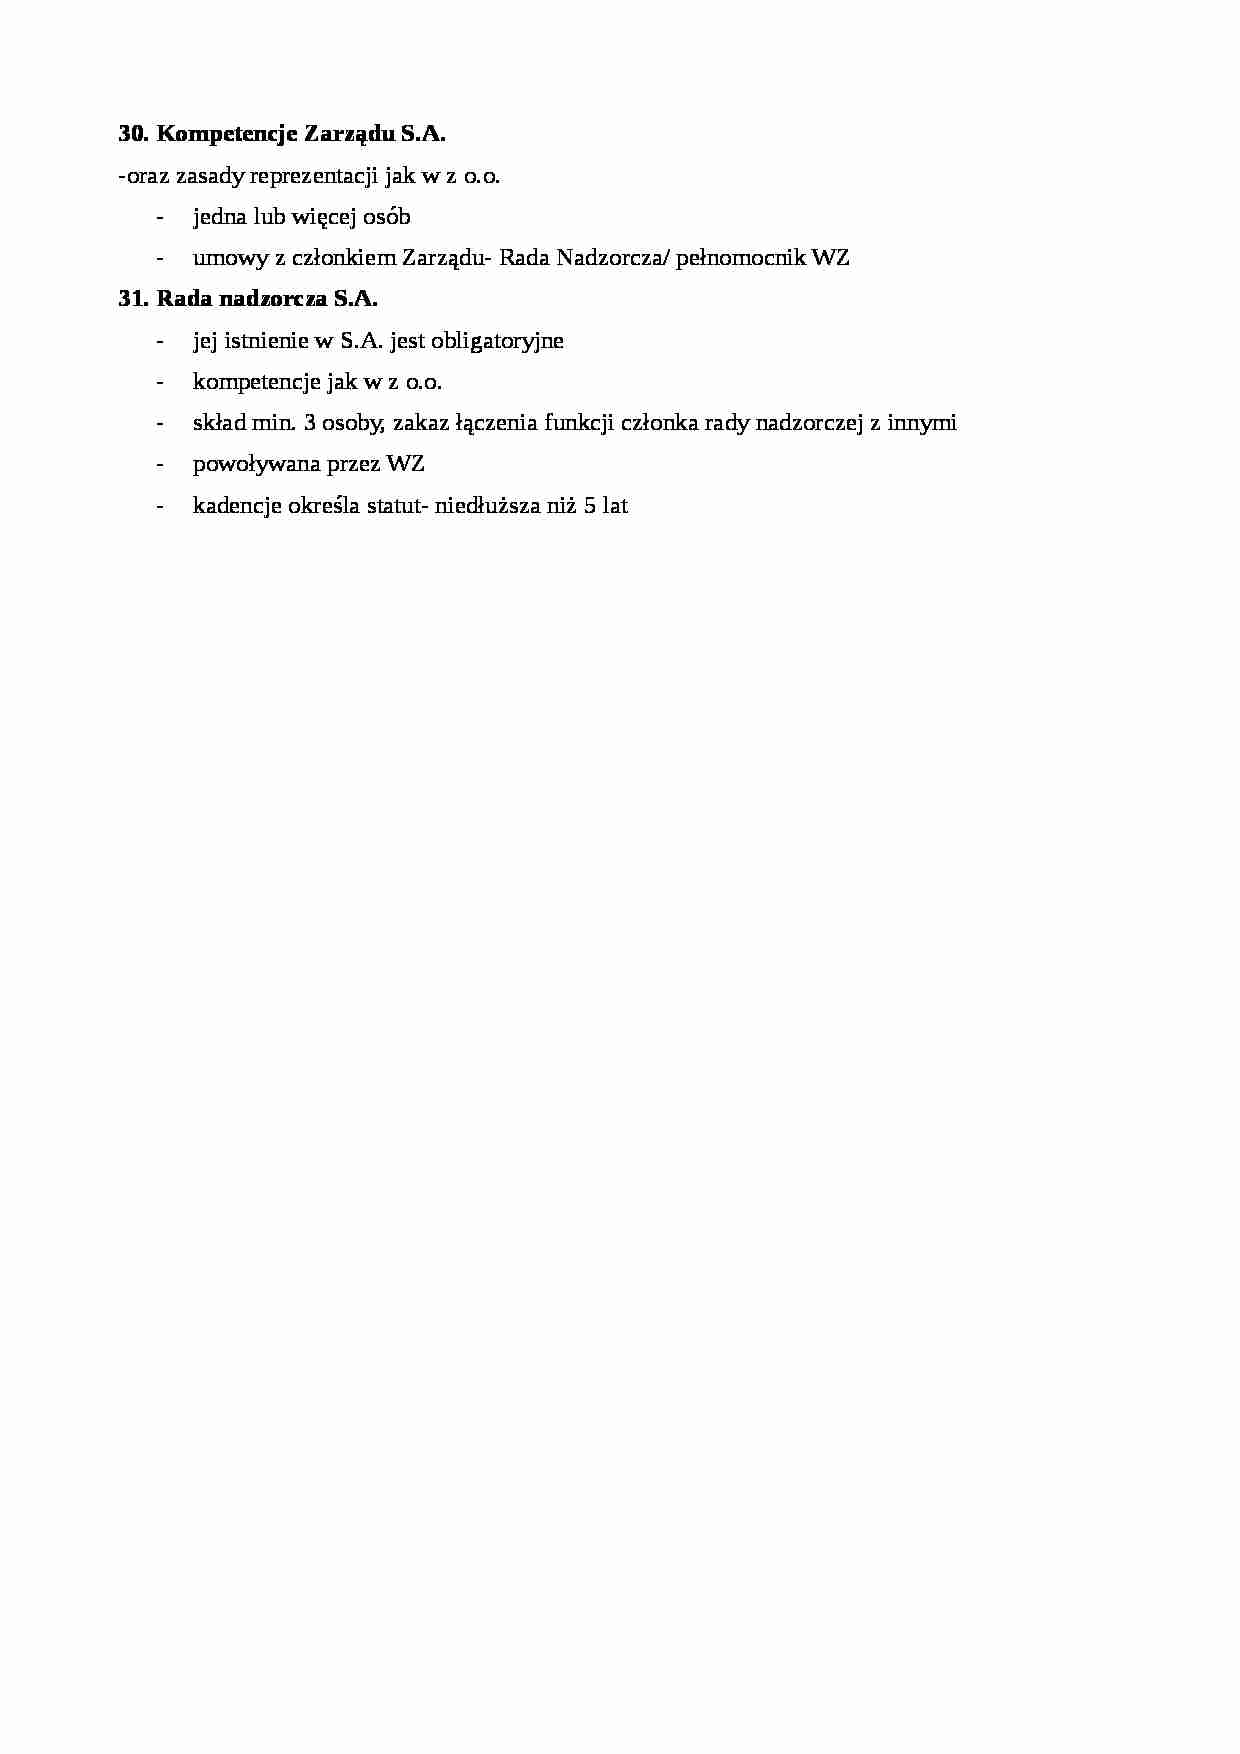 Rada nadzorcza i kompetencje zarządu S.A. - strona 1